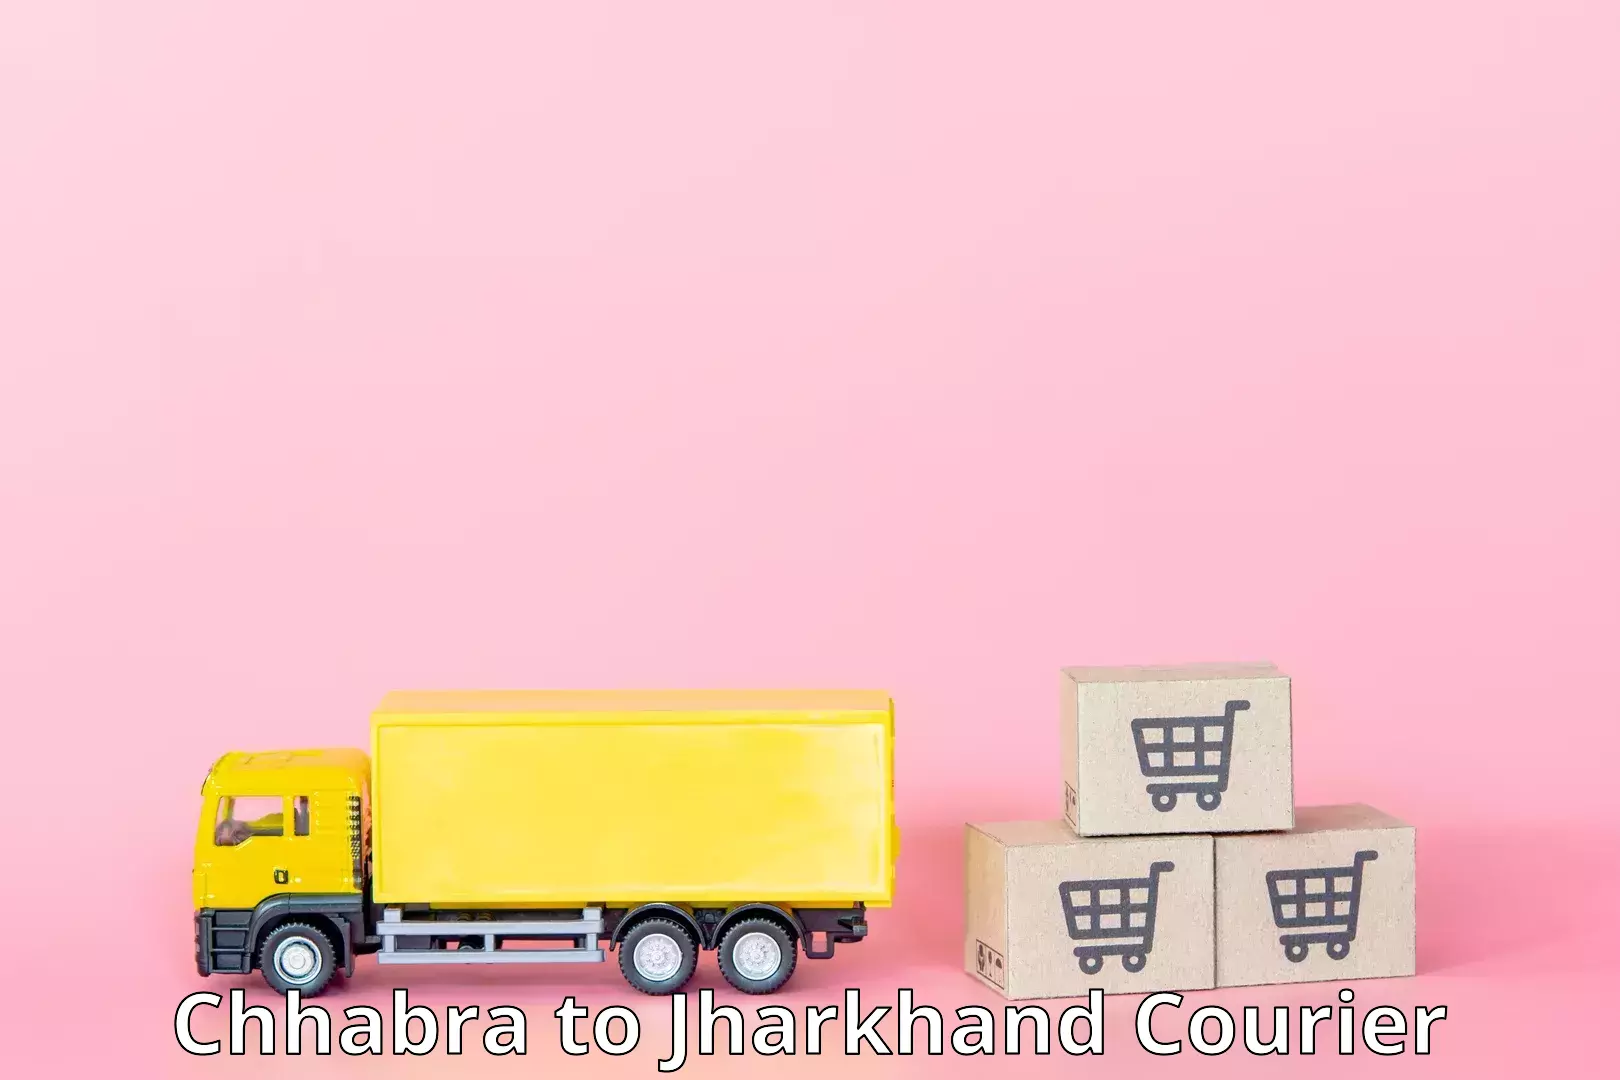 Regular parcel service Chhabra to Medininagar